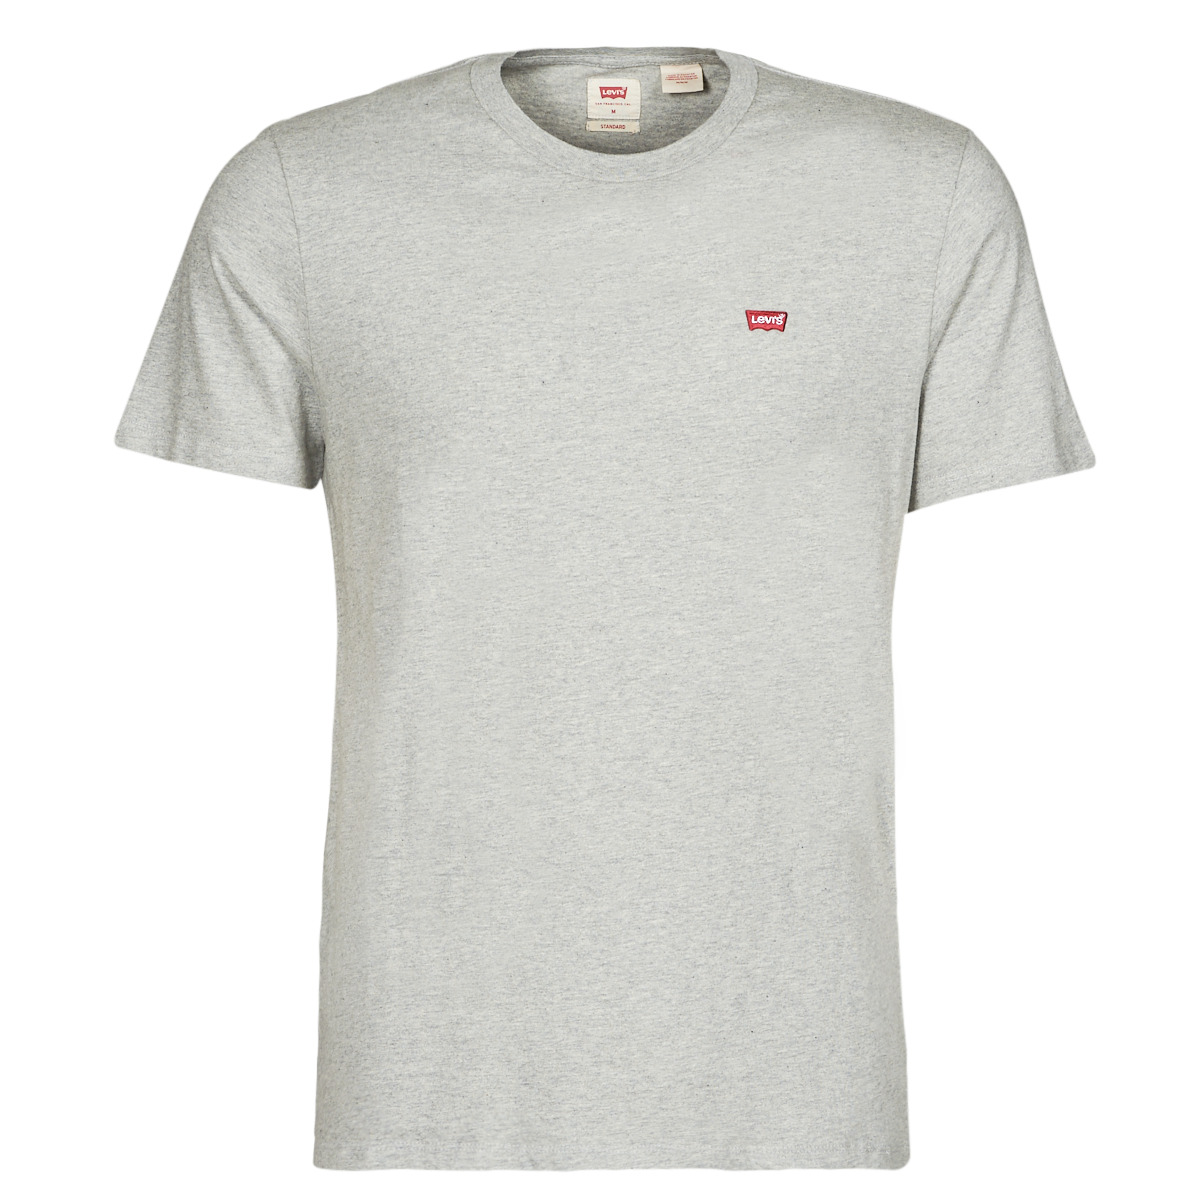 tekstylia Męskie T-shirty z krótkim rękawem Levi's SS ORIGINAL HM TEE Szary